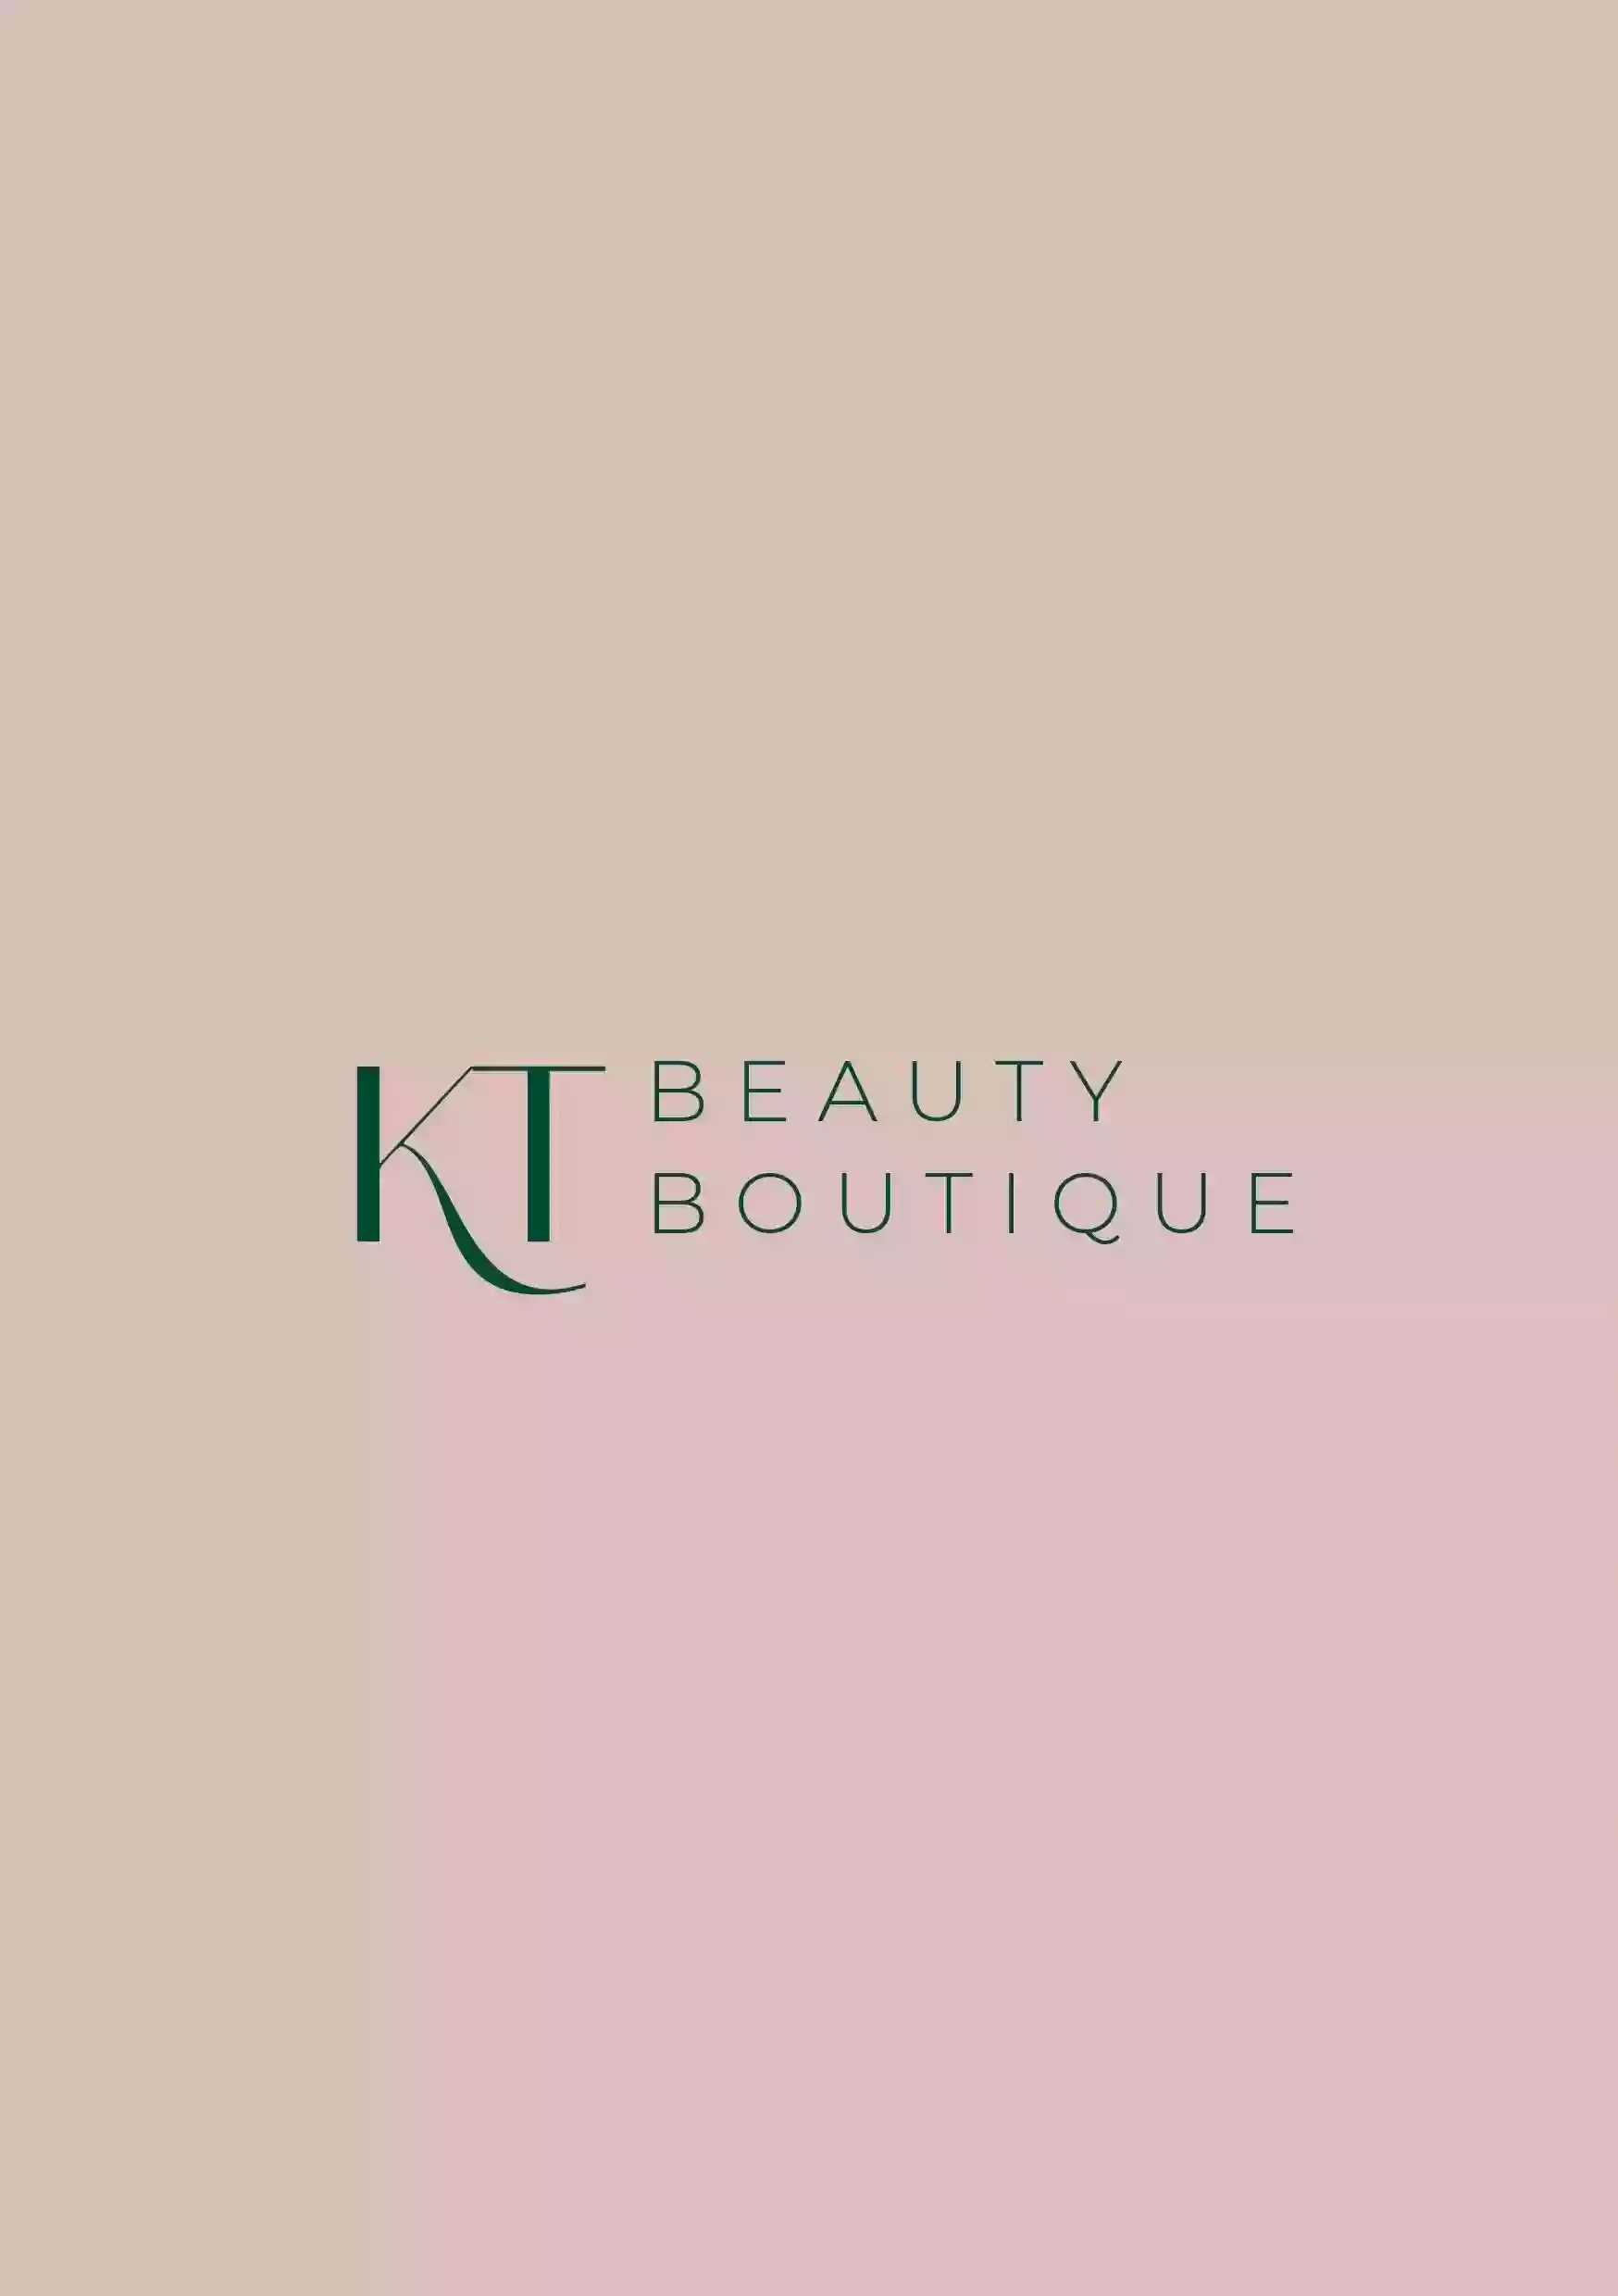 KT Beauty Boutique